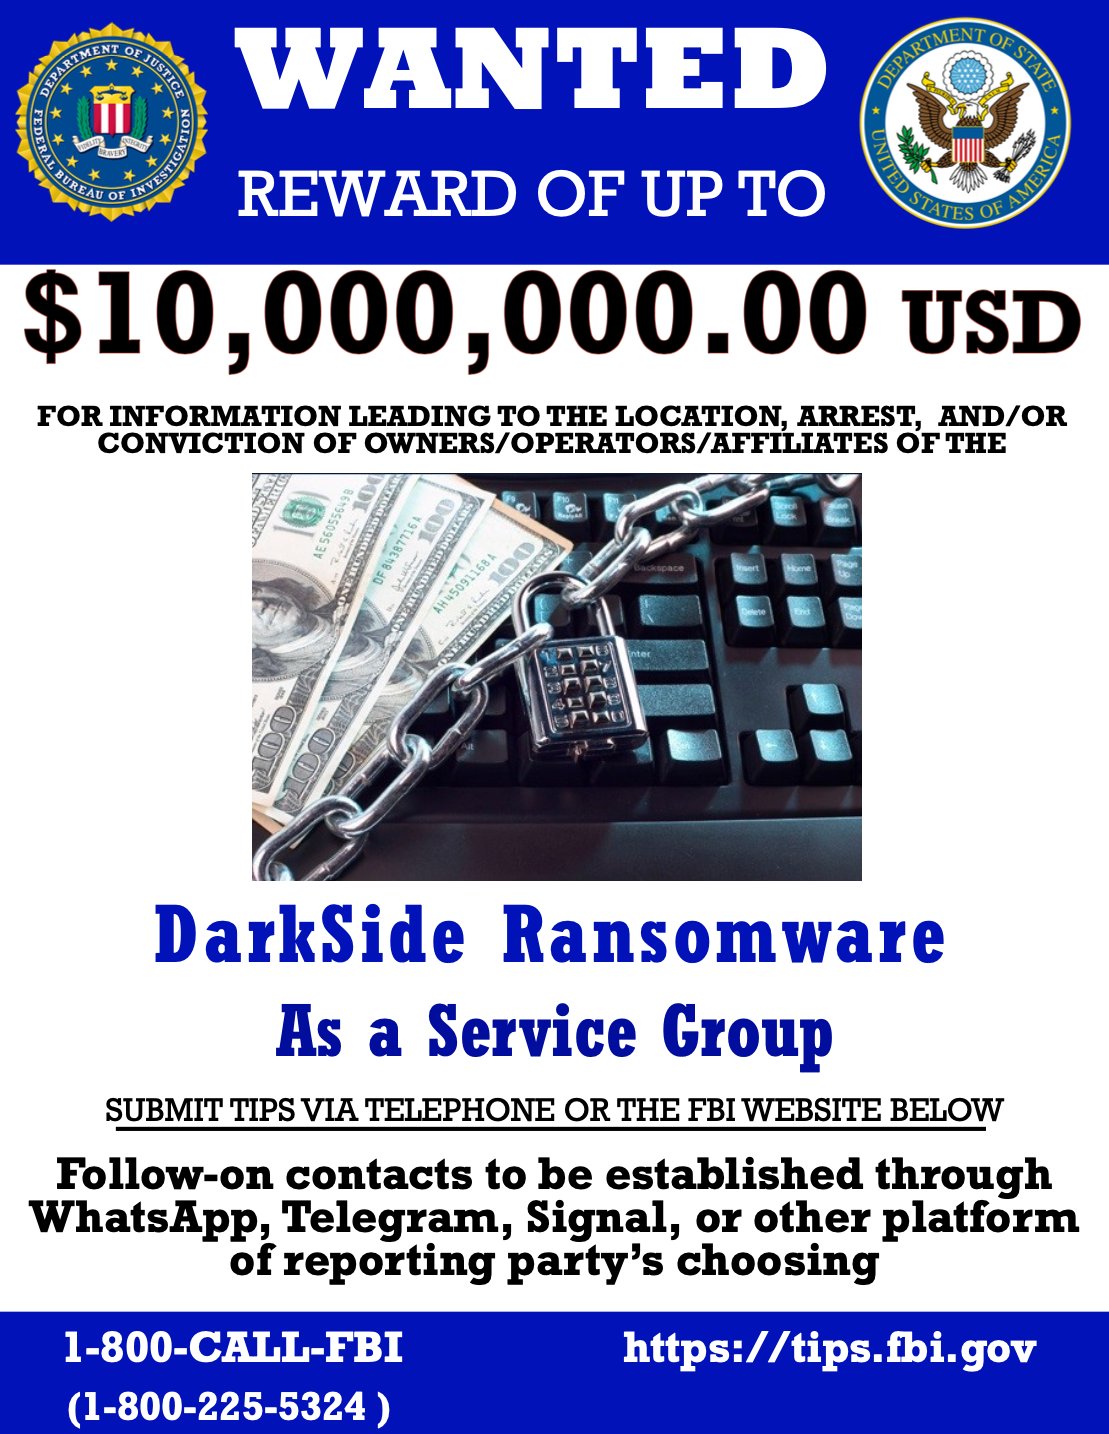 FBI, DarkSide ransomware grubu için 10 milyon dolar ödeyecek